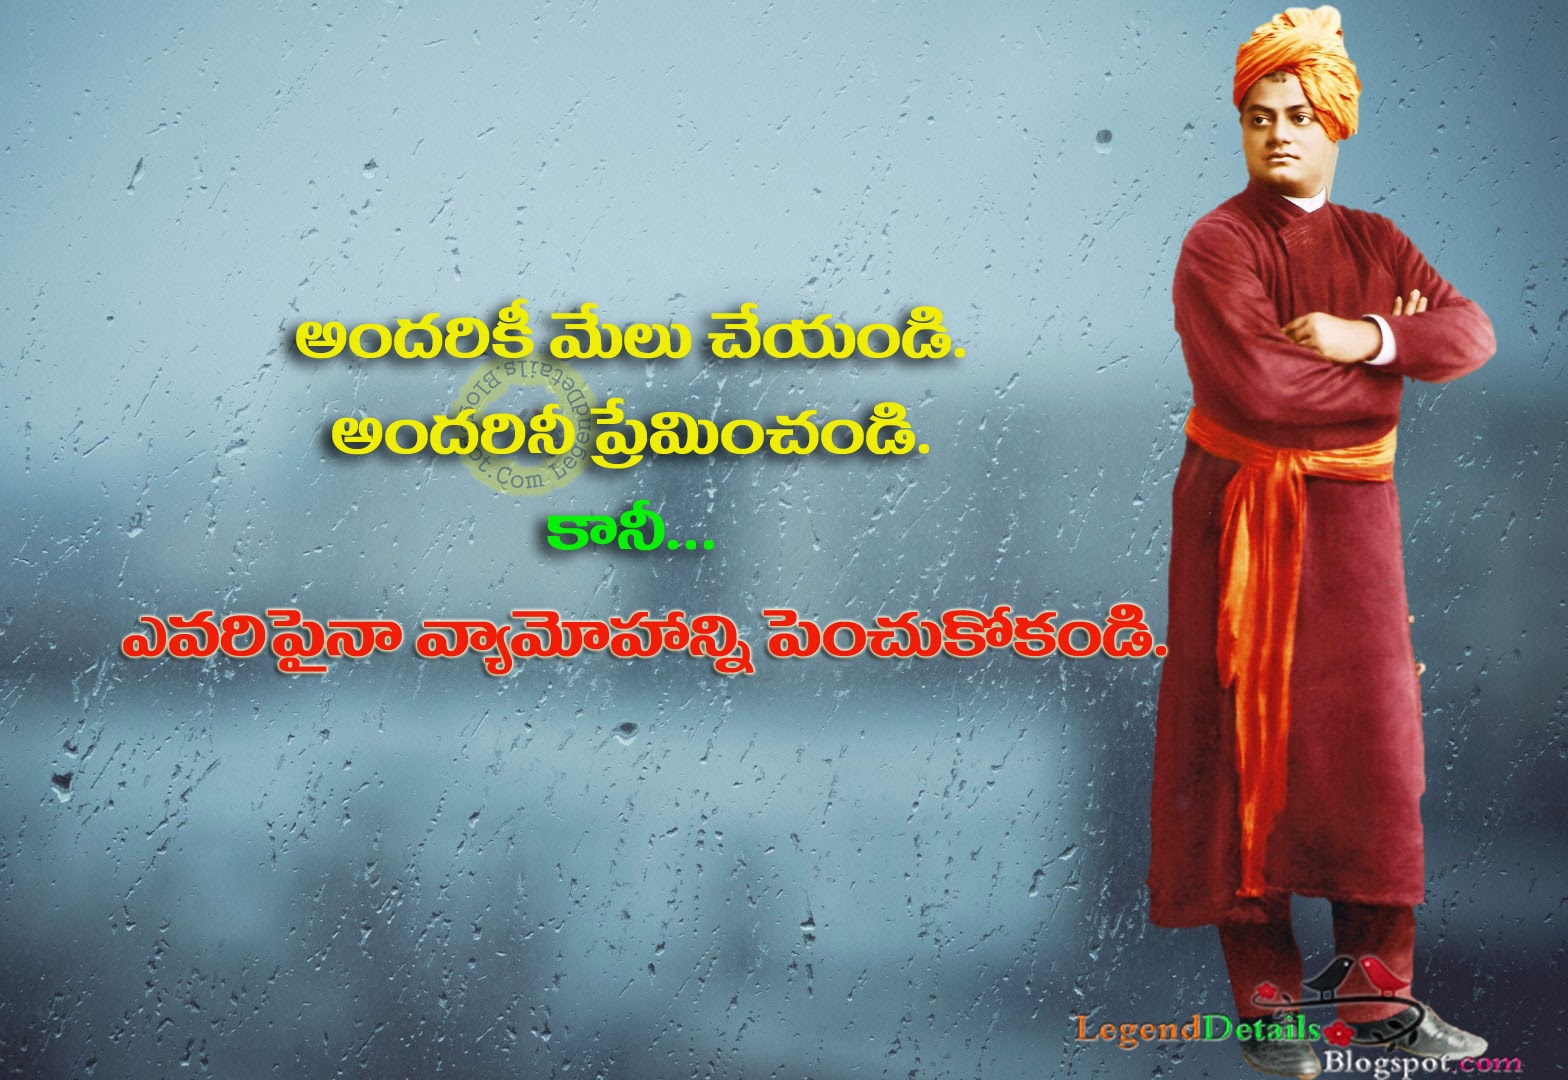 Swami Vivekananda Quotes In Telugu Language Pdf Free Download